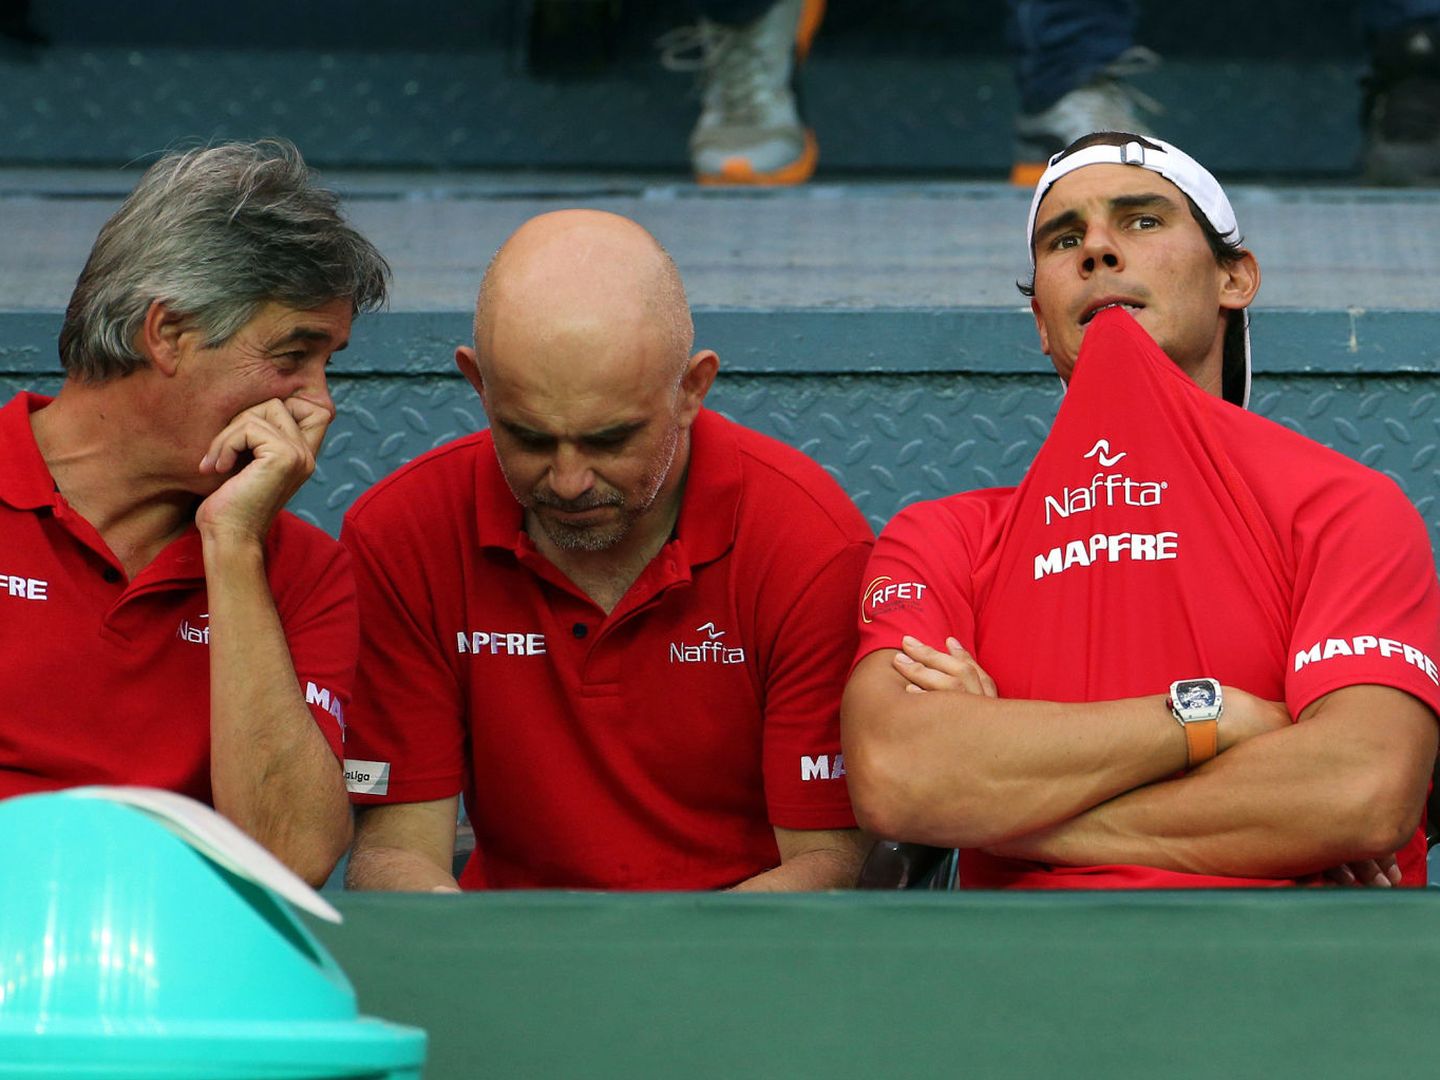 El doctor Cotorro, a la izquierda de la imagen, en la reciente eliminatoria de la Davis en la que jugó Nadal. (EFE)